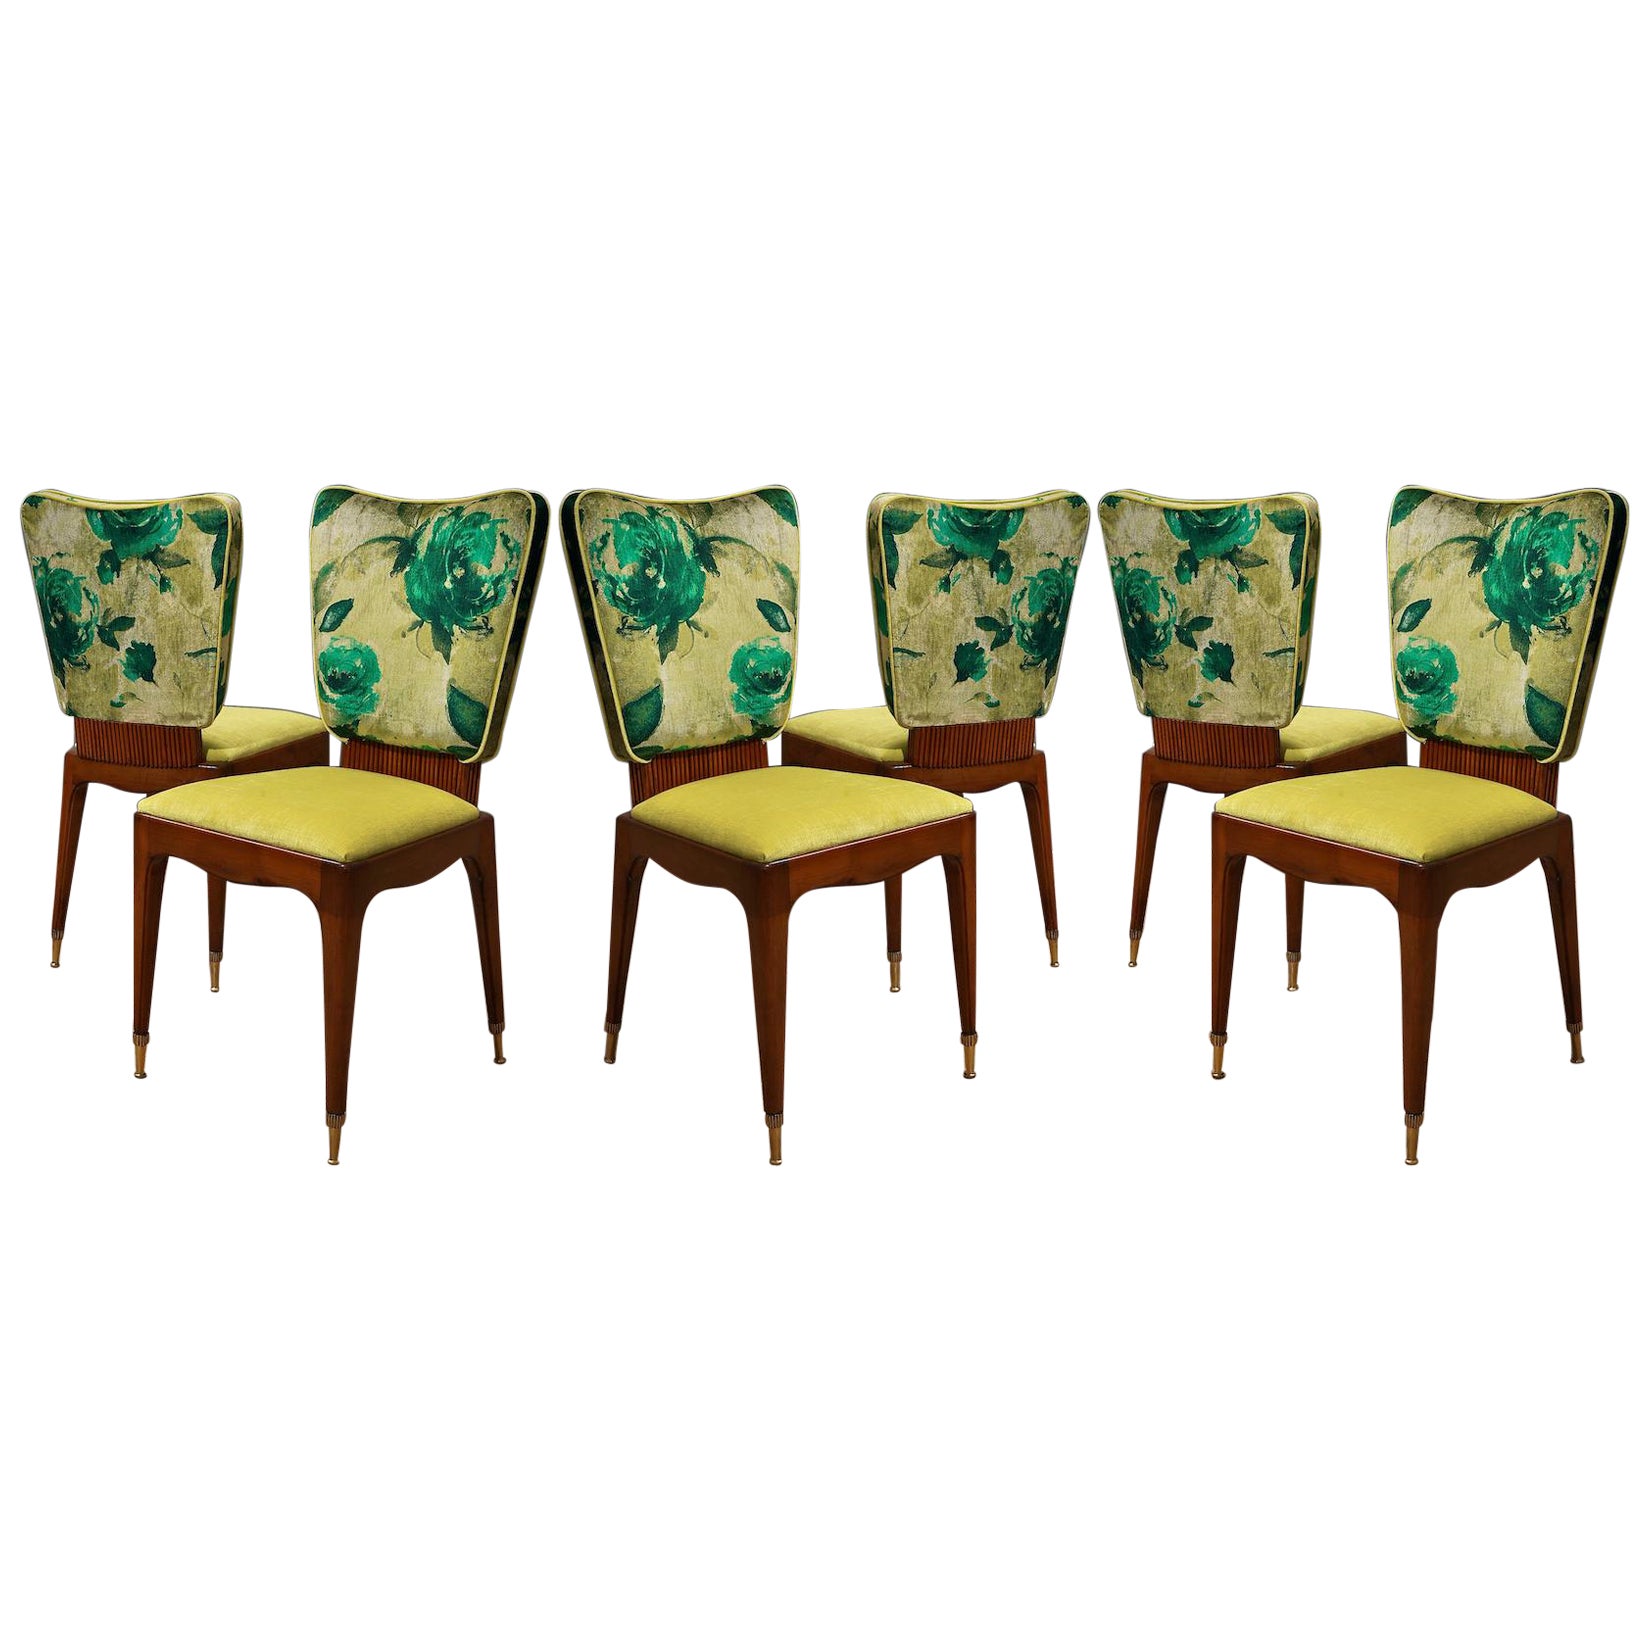 Osvaldo Borsani zugeschrieben Kirschbaumholz und floralen Stoff sechs Stühle, 1950